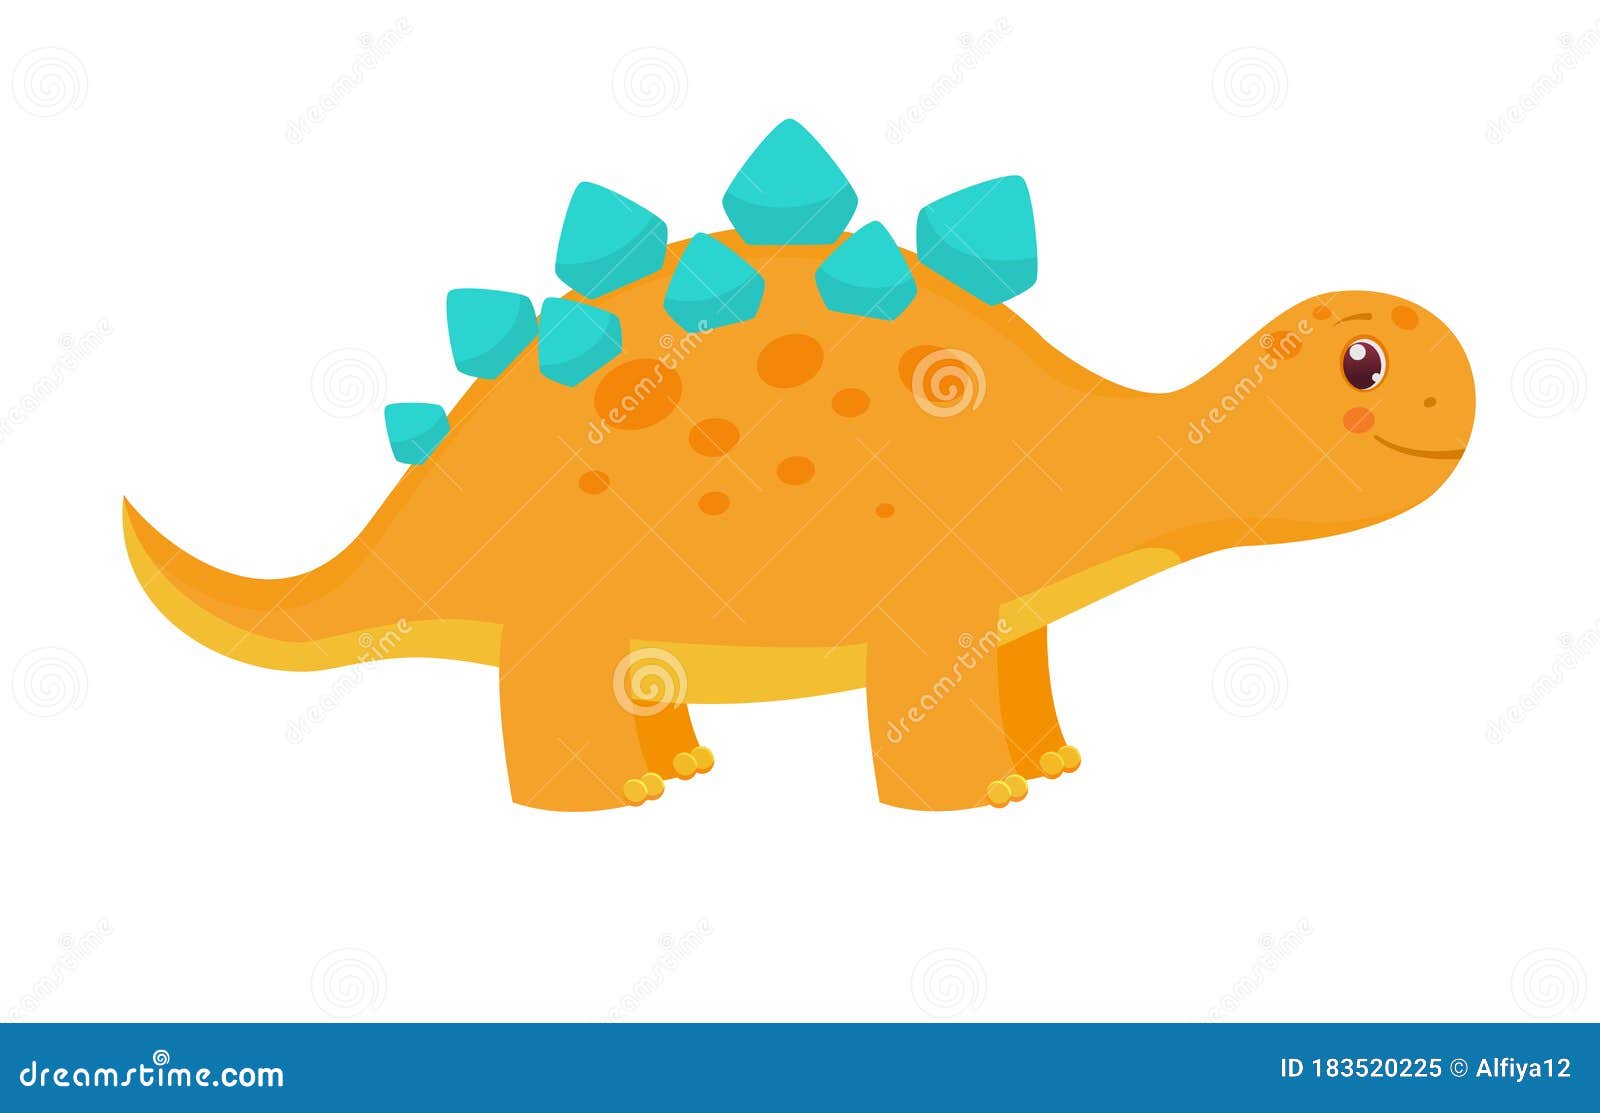 Cute Dinosaur Cartoon Stock Illustrations – 38,059 Cute Dinosaur Cartoon  Stock Illustrations, Vectors & Clipart - Dreamstime